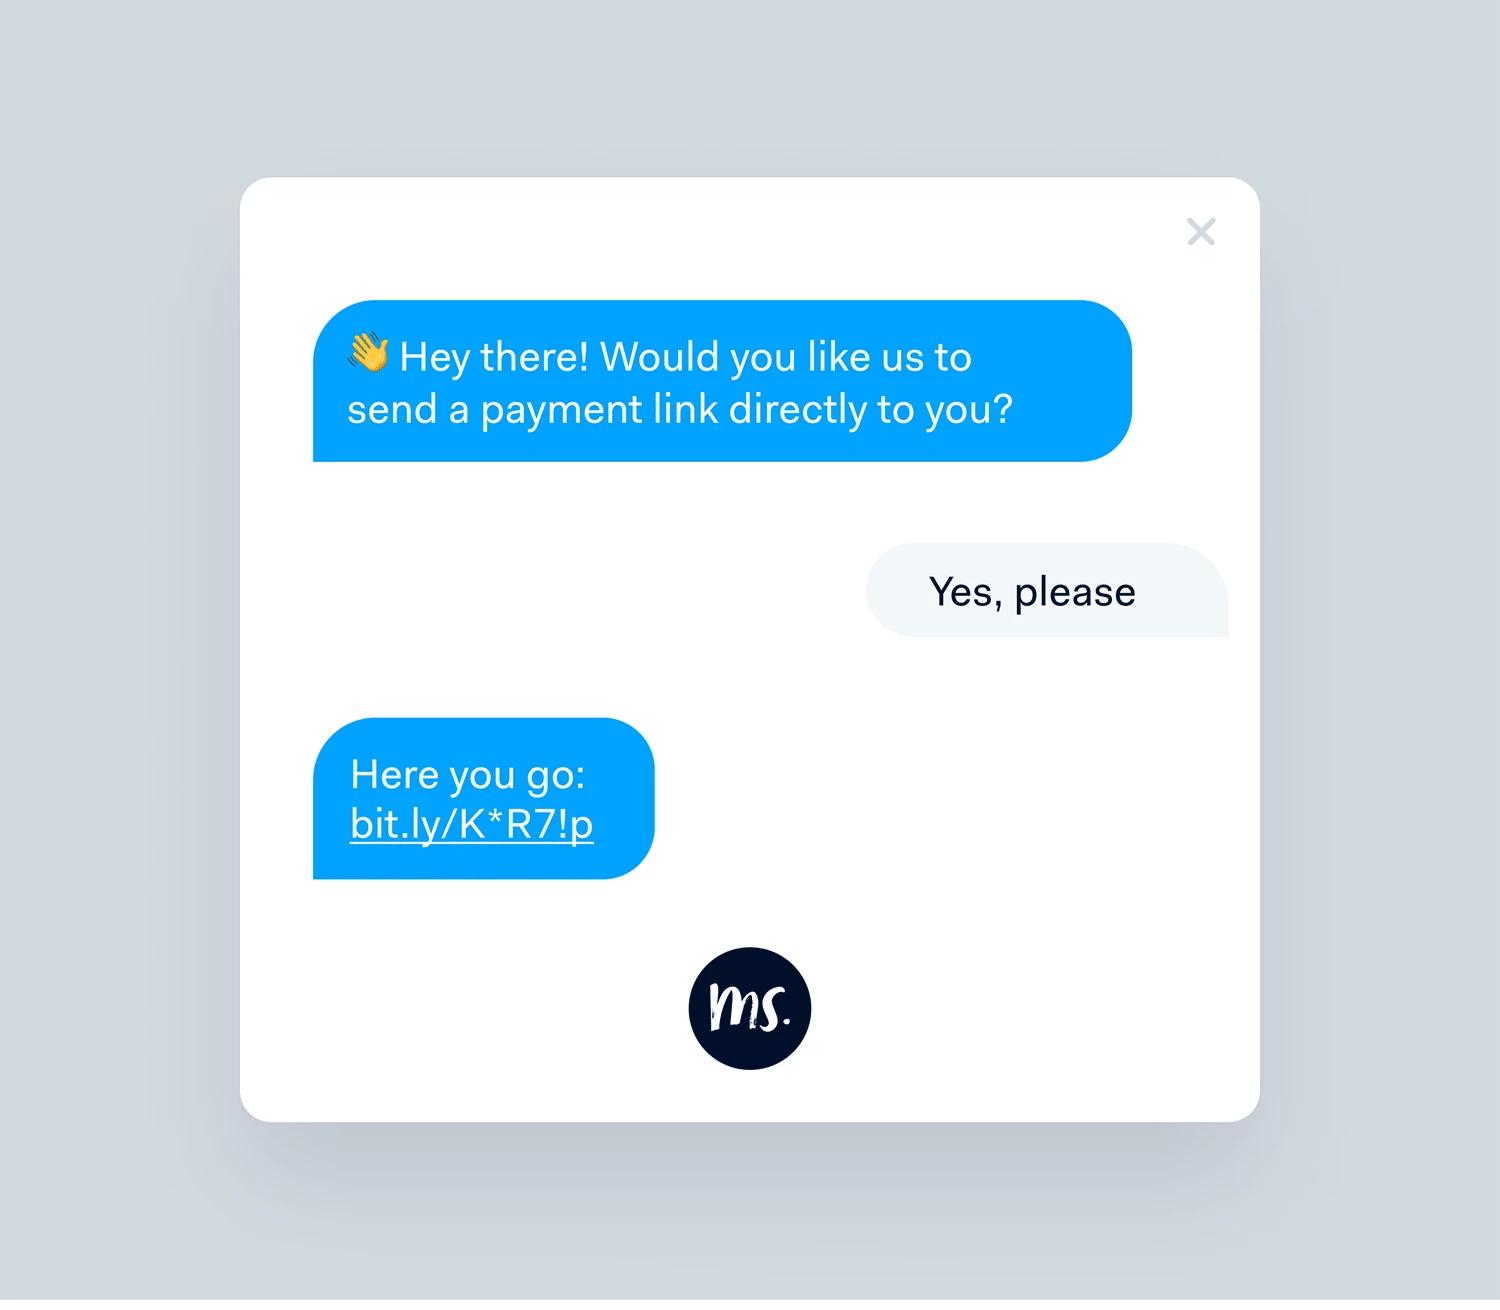 Voorbeeld van Pay by Link in een chatbot scenario